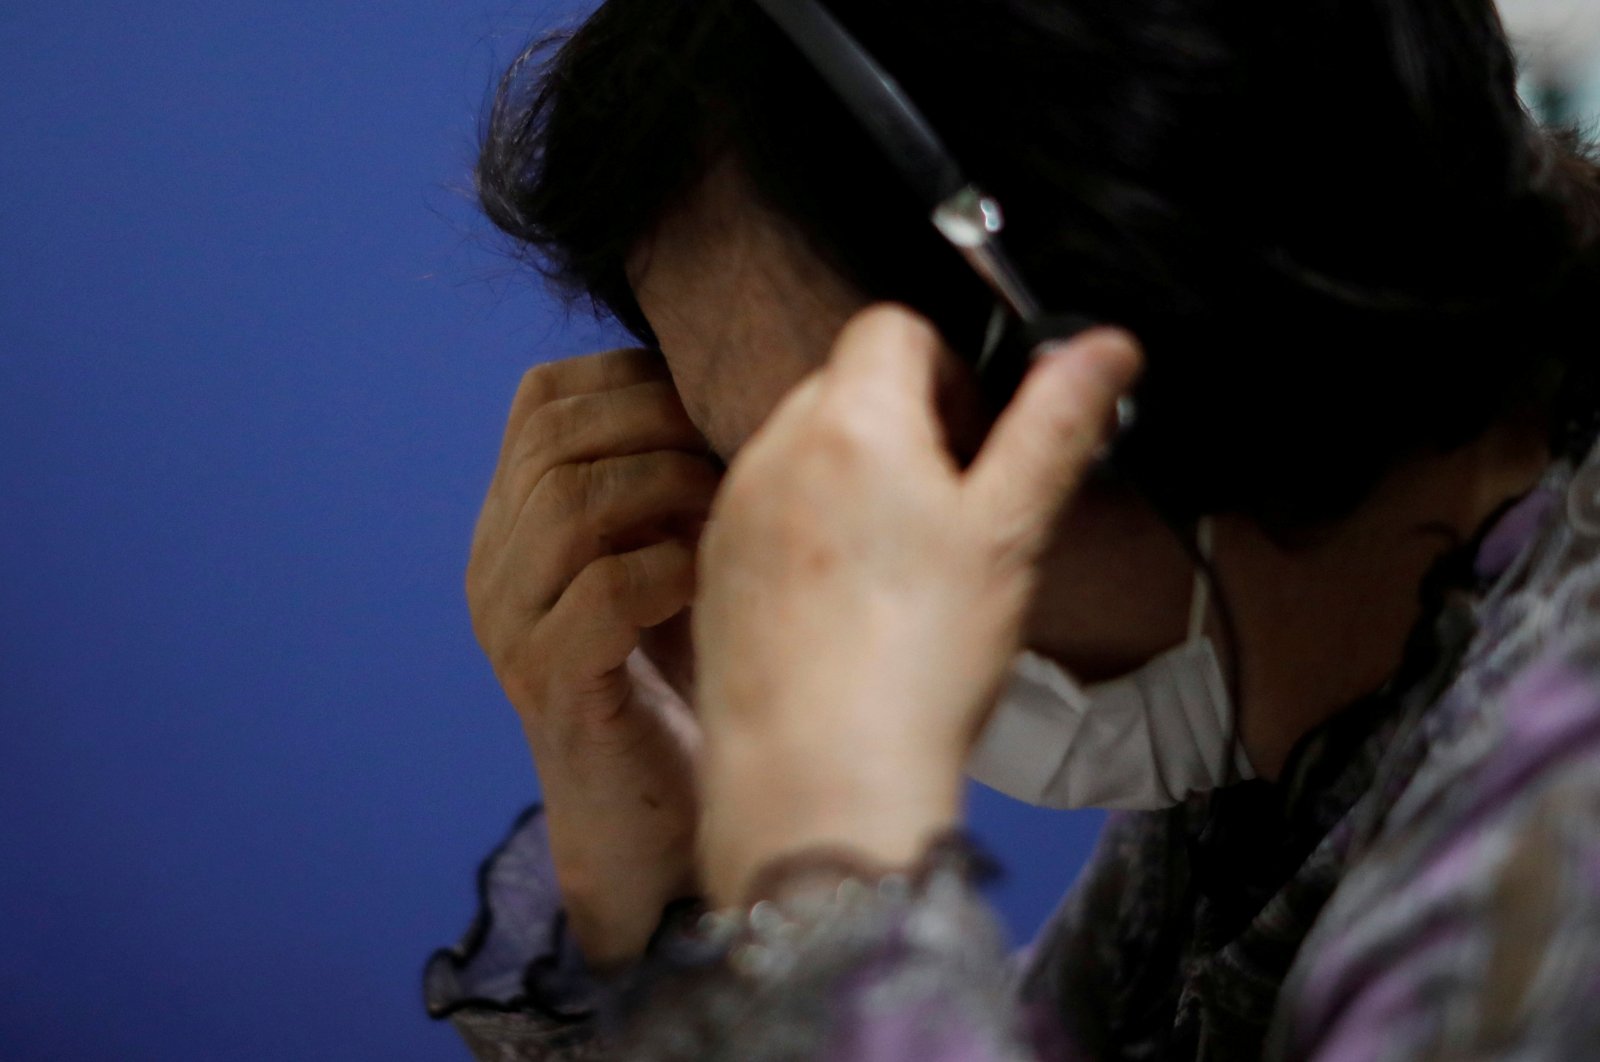 Het aantal zelfmoorden in Japan stijgt tijdens de COVID-19-pandemie